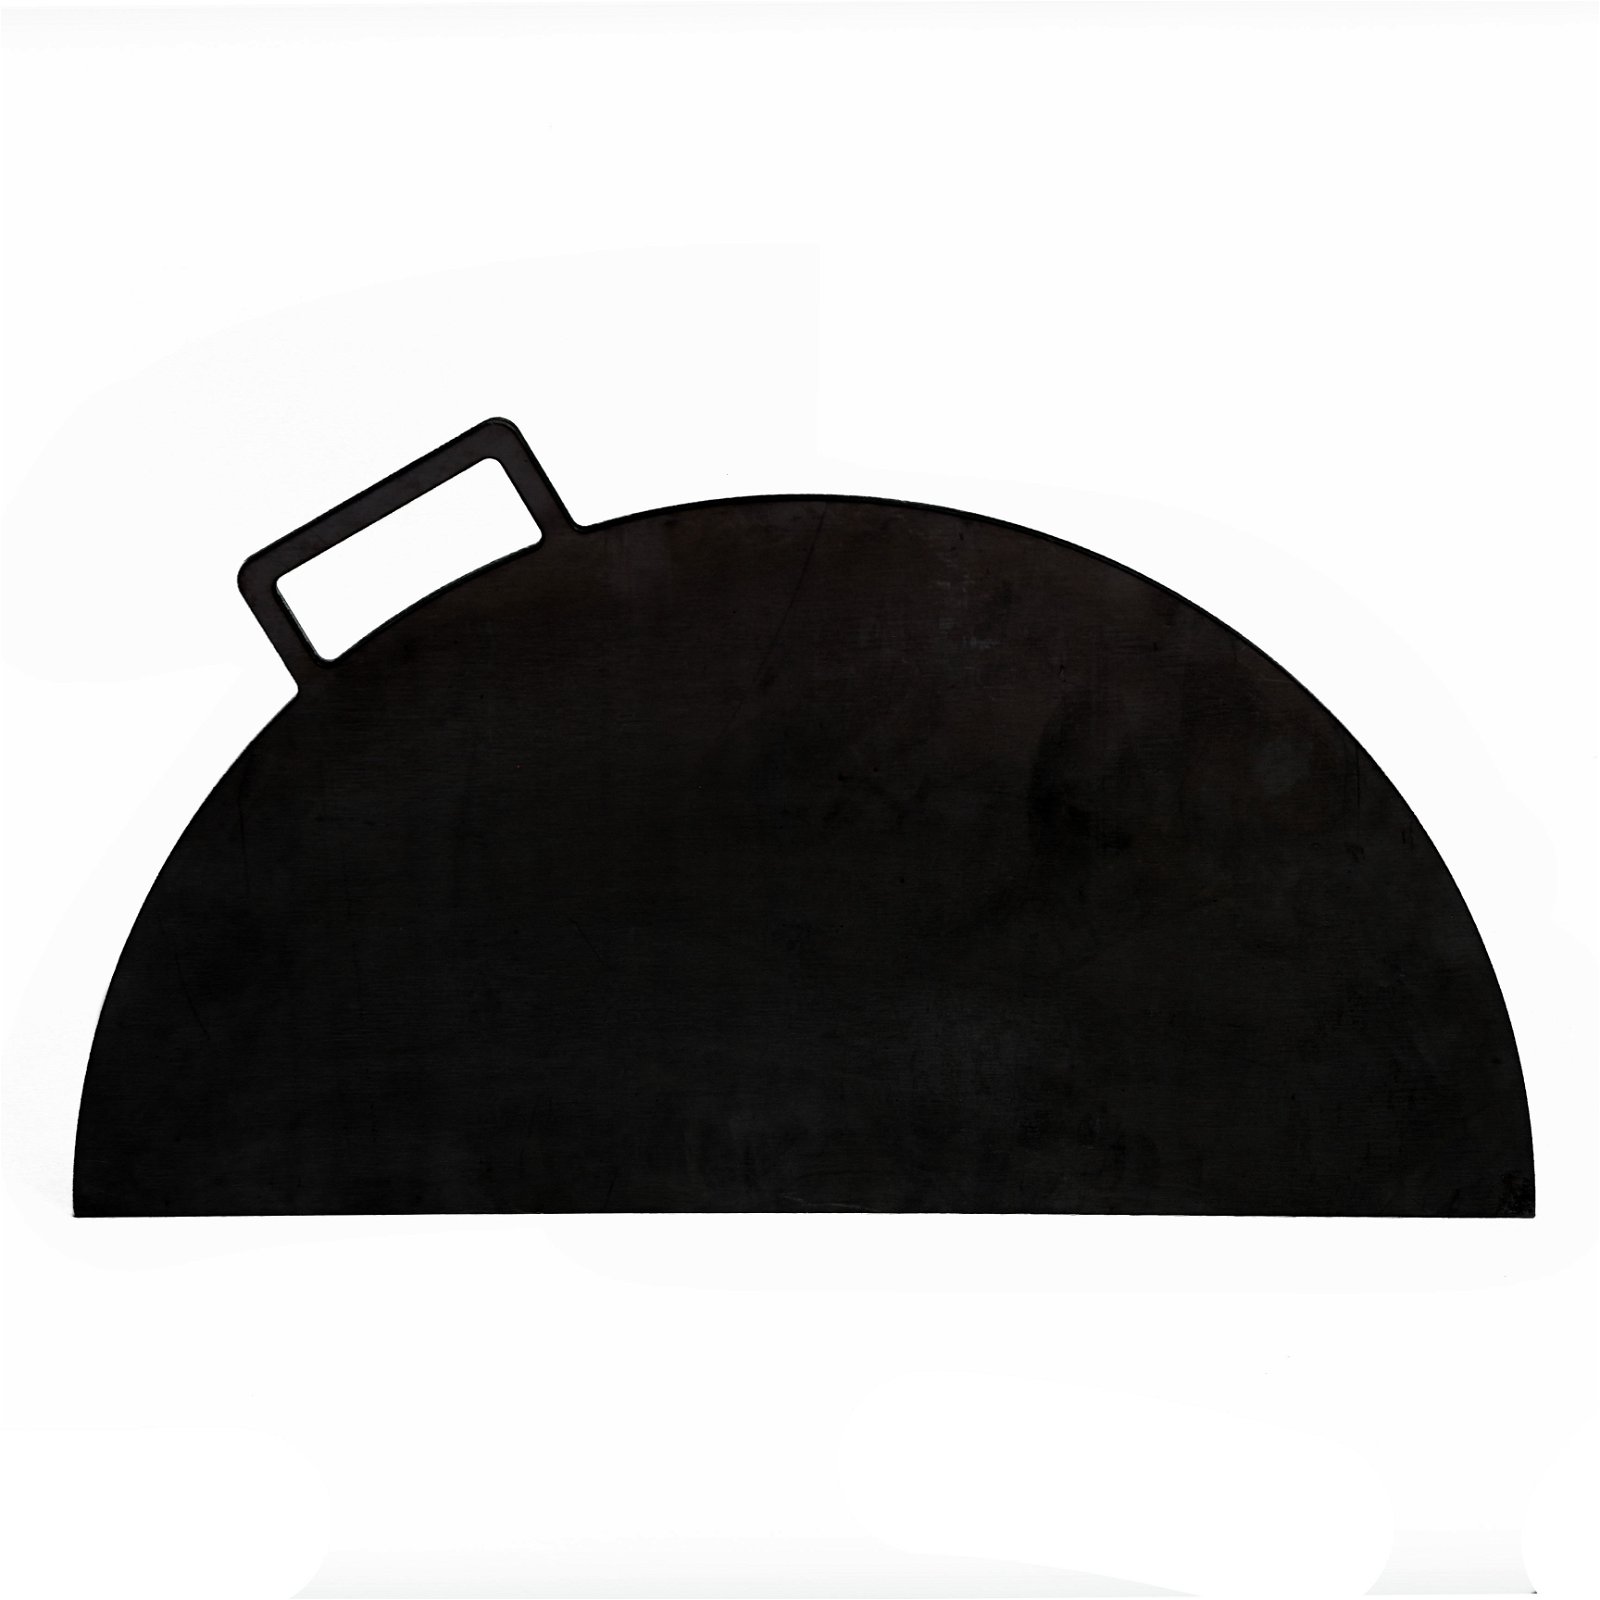 Gussgrillplatte für Feuerschale XS von Buschbeck, schwarz